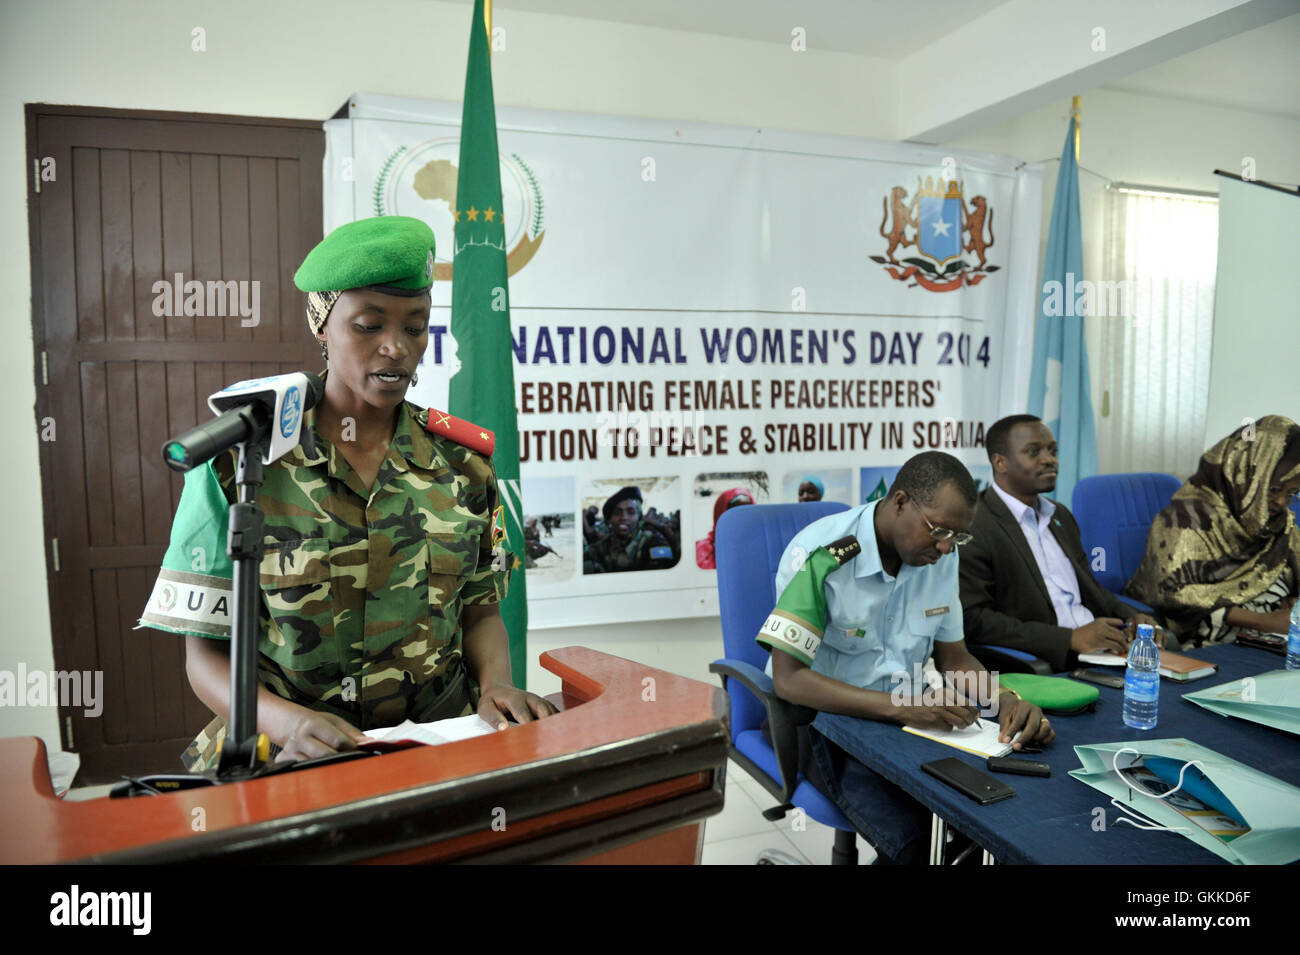 Lieutenant Jeanette pendant la Journée internationale des femmes le 6 mars 2014 qu'a été la célébration de femmes soldats de la paix en Somalie. Banque D'Images